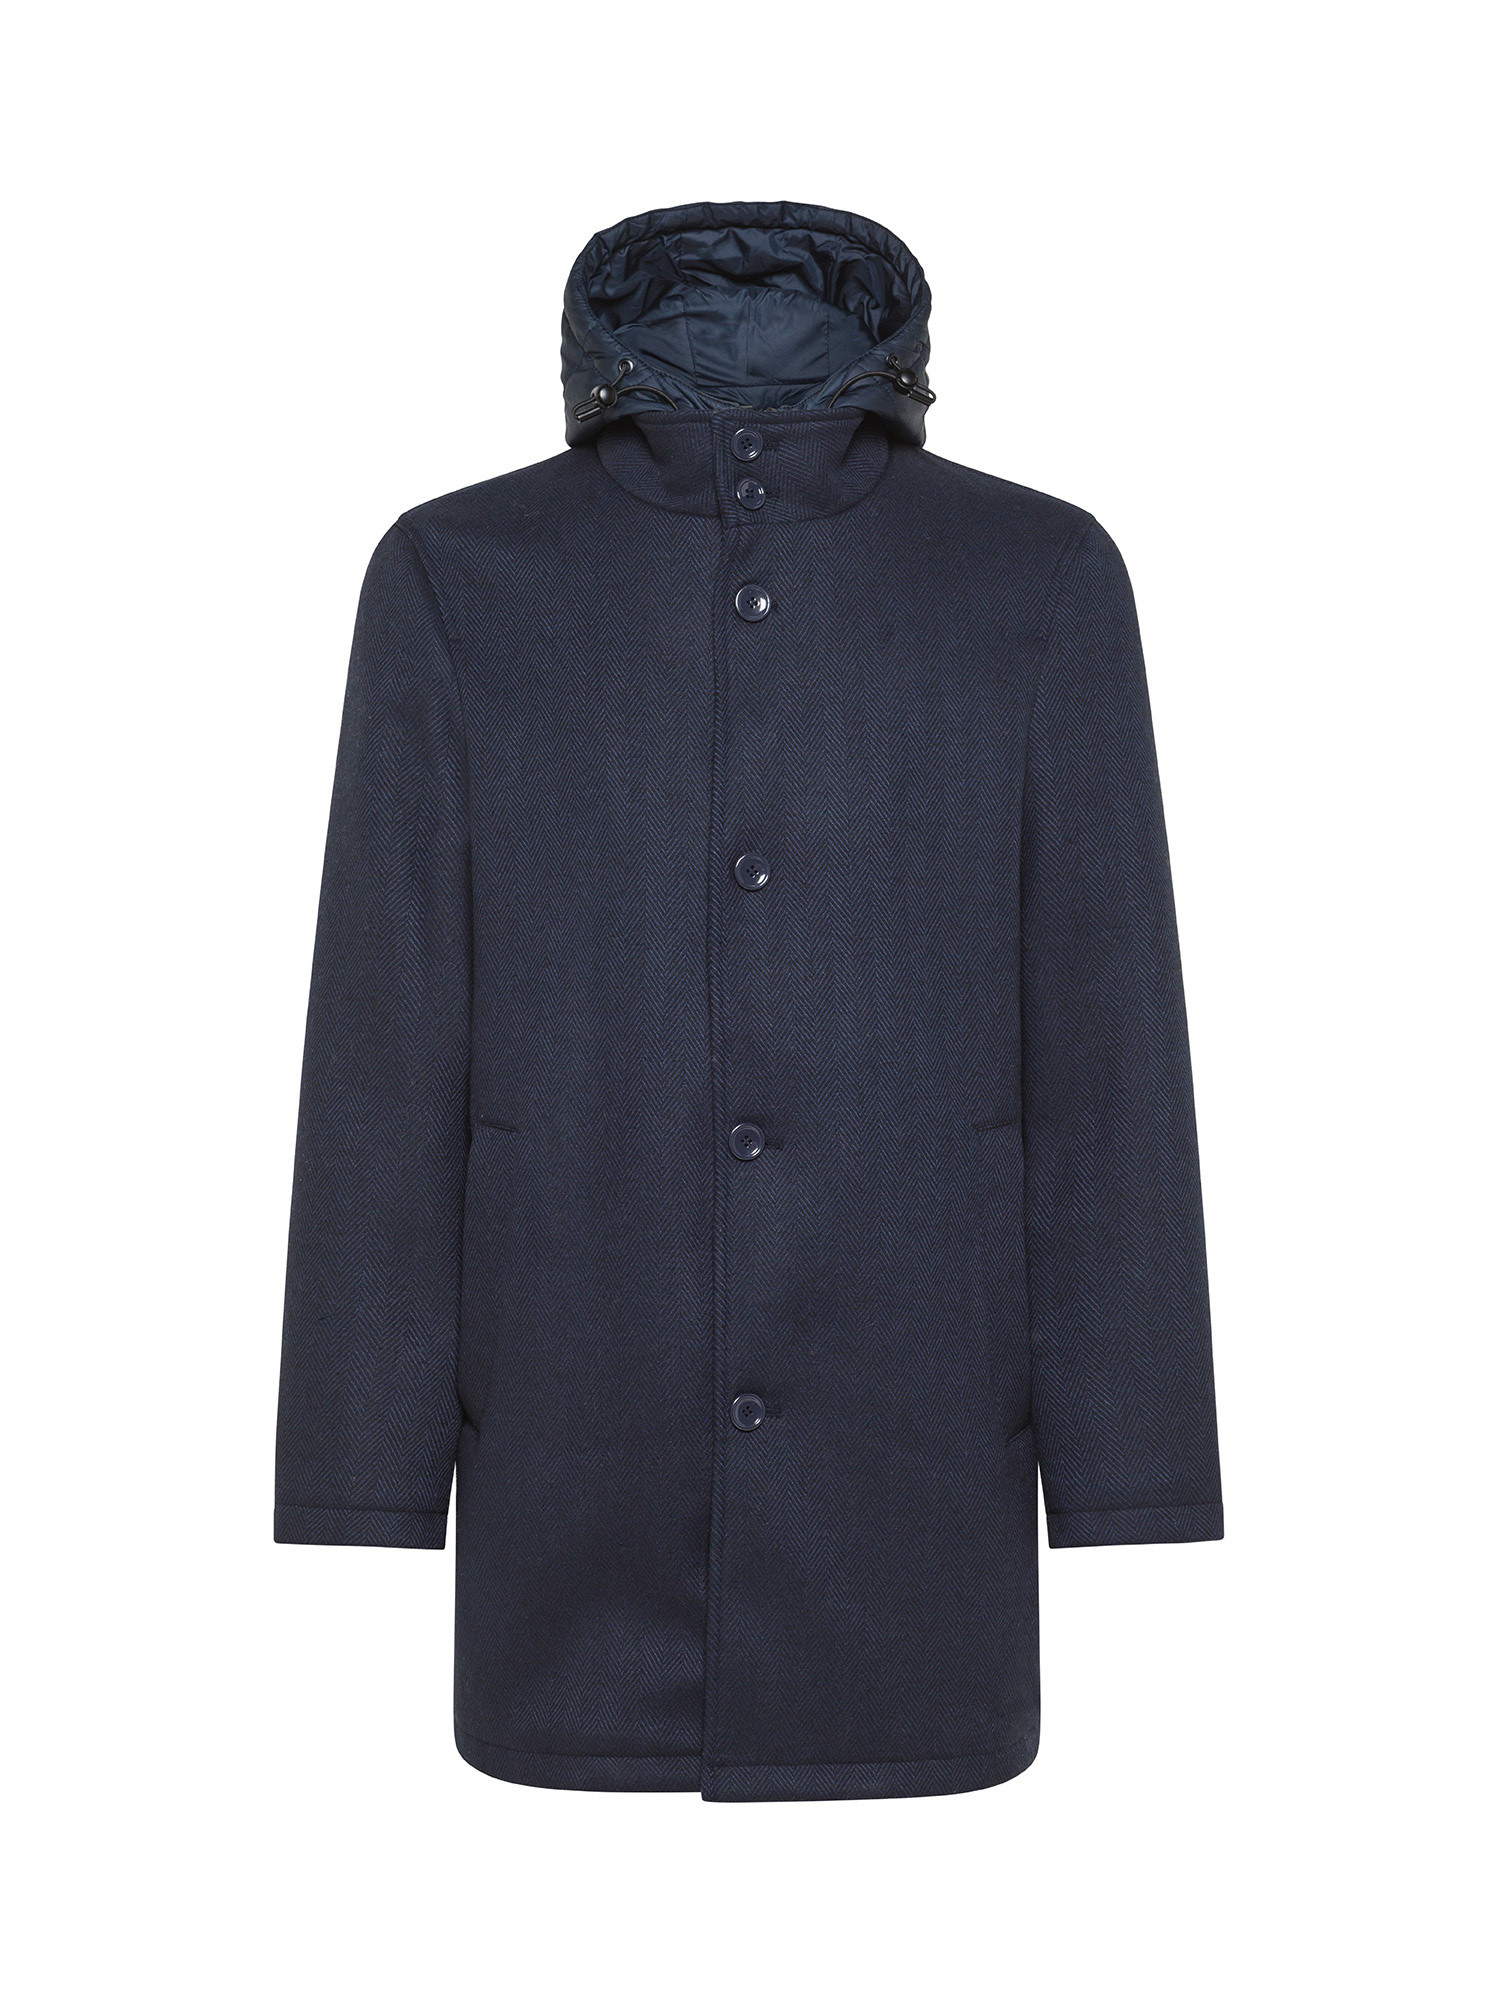 Luca D'Altieri - Cappotto monopetto con cappuccio effetto stampato, Blu, large